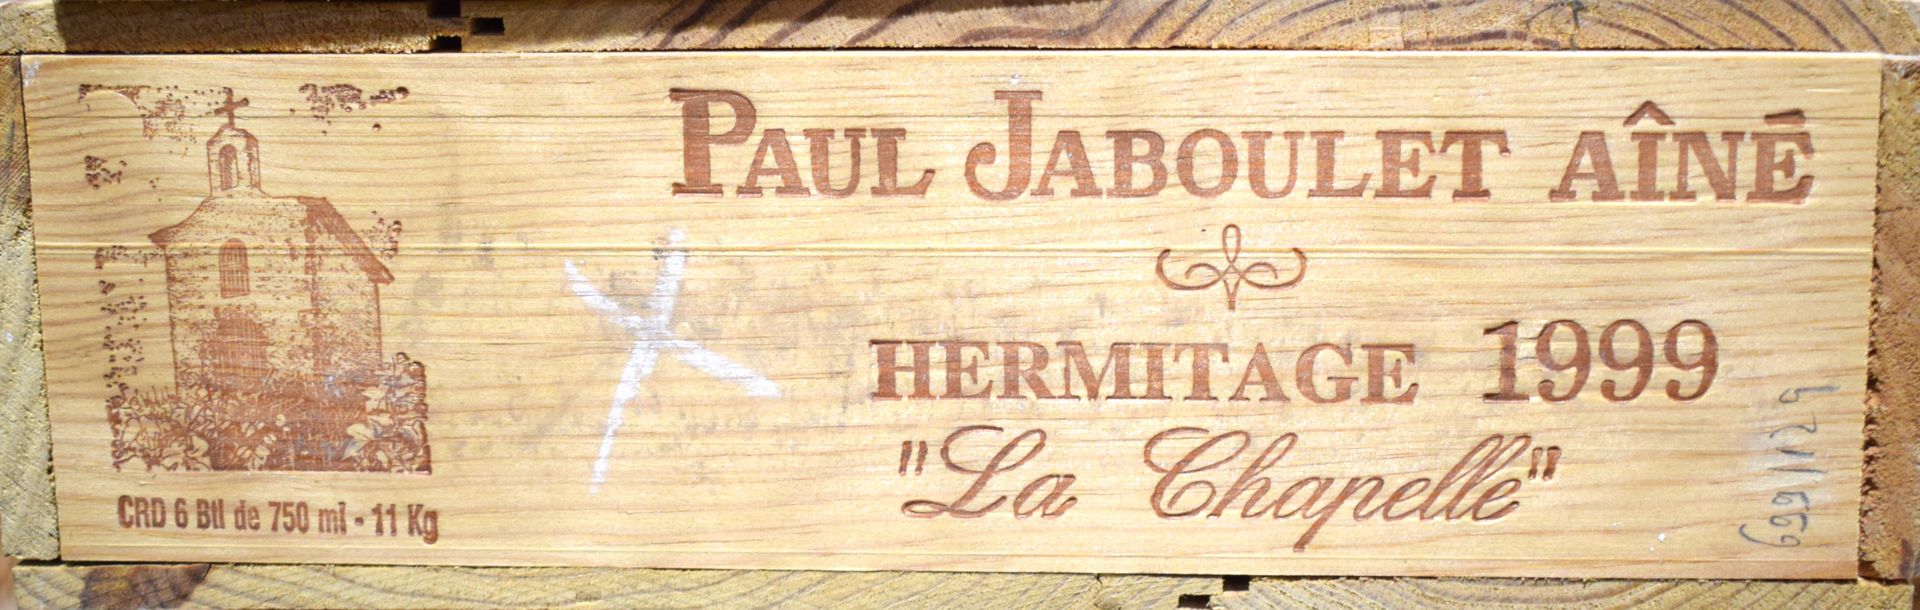 Null (HERMITAGE) En estuche de madera, lote de 6 botellas de Paul JABOULET Aîné,&hellip;